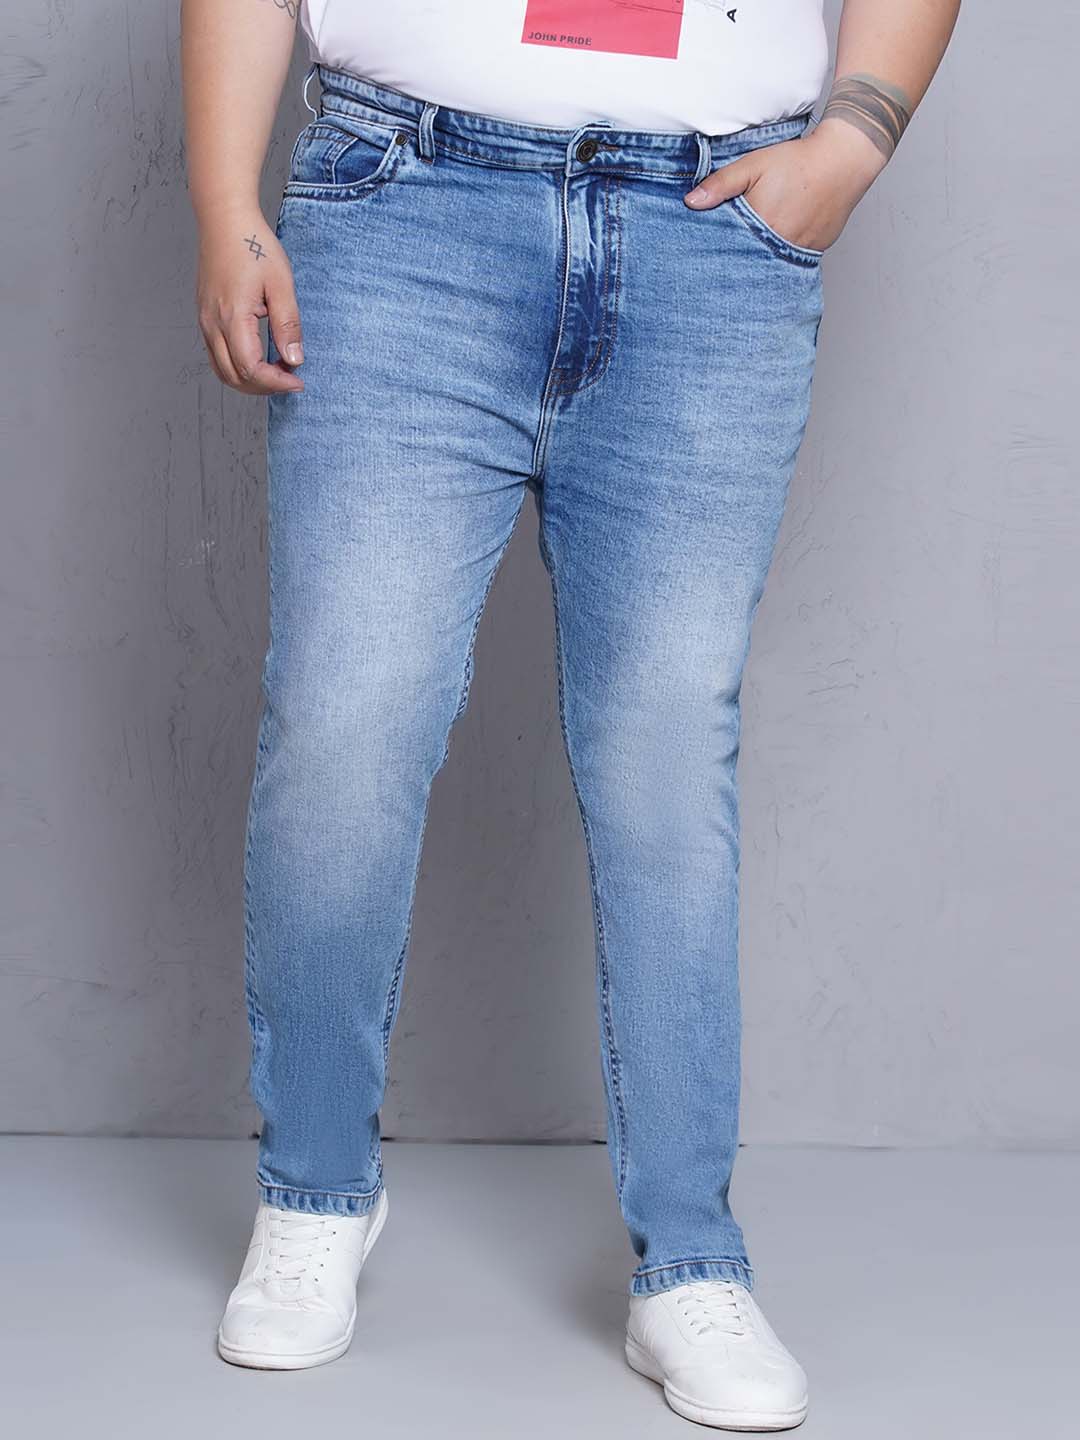 bottomwear/jeans/JPJ27117/jpj27117-1.jpg